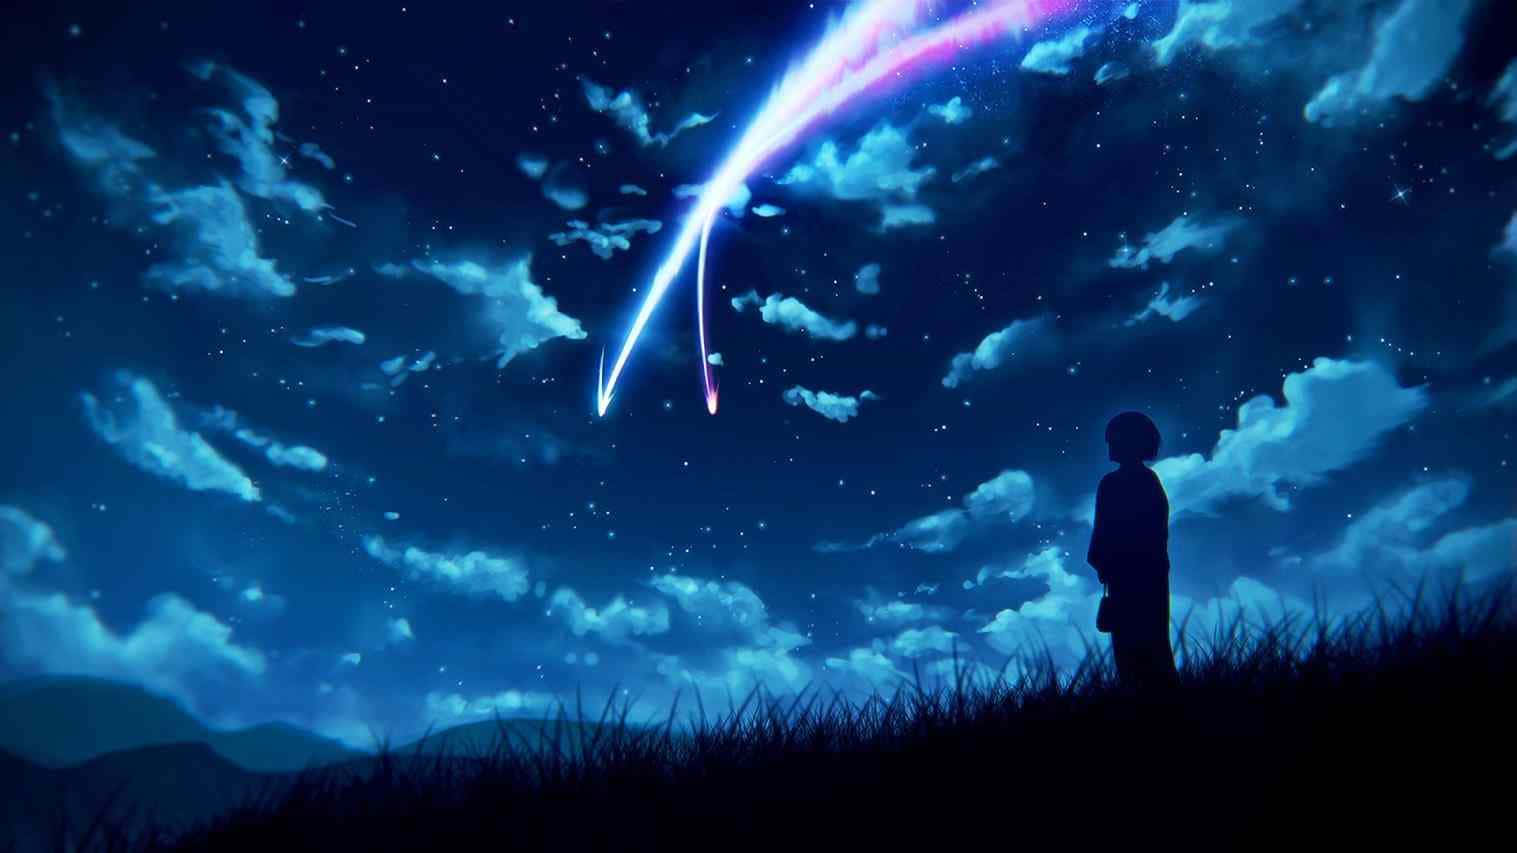 Chicode Anime Genial De Pie En El Césped Bajo Un Cielo Azul. Fondo de pantalla